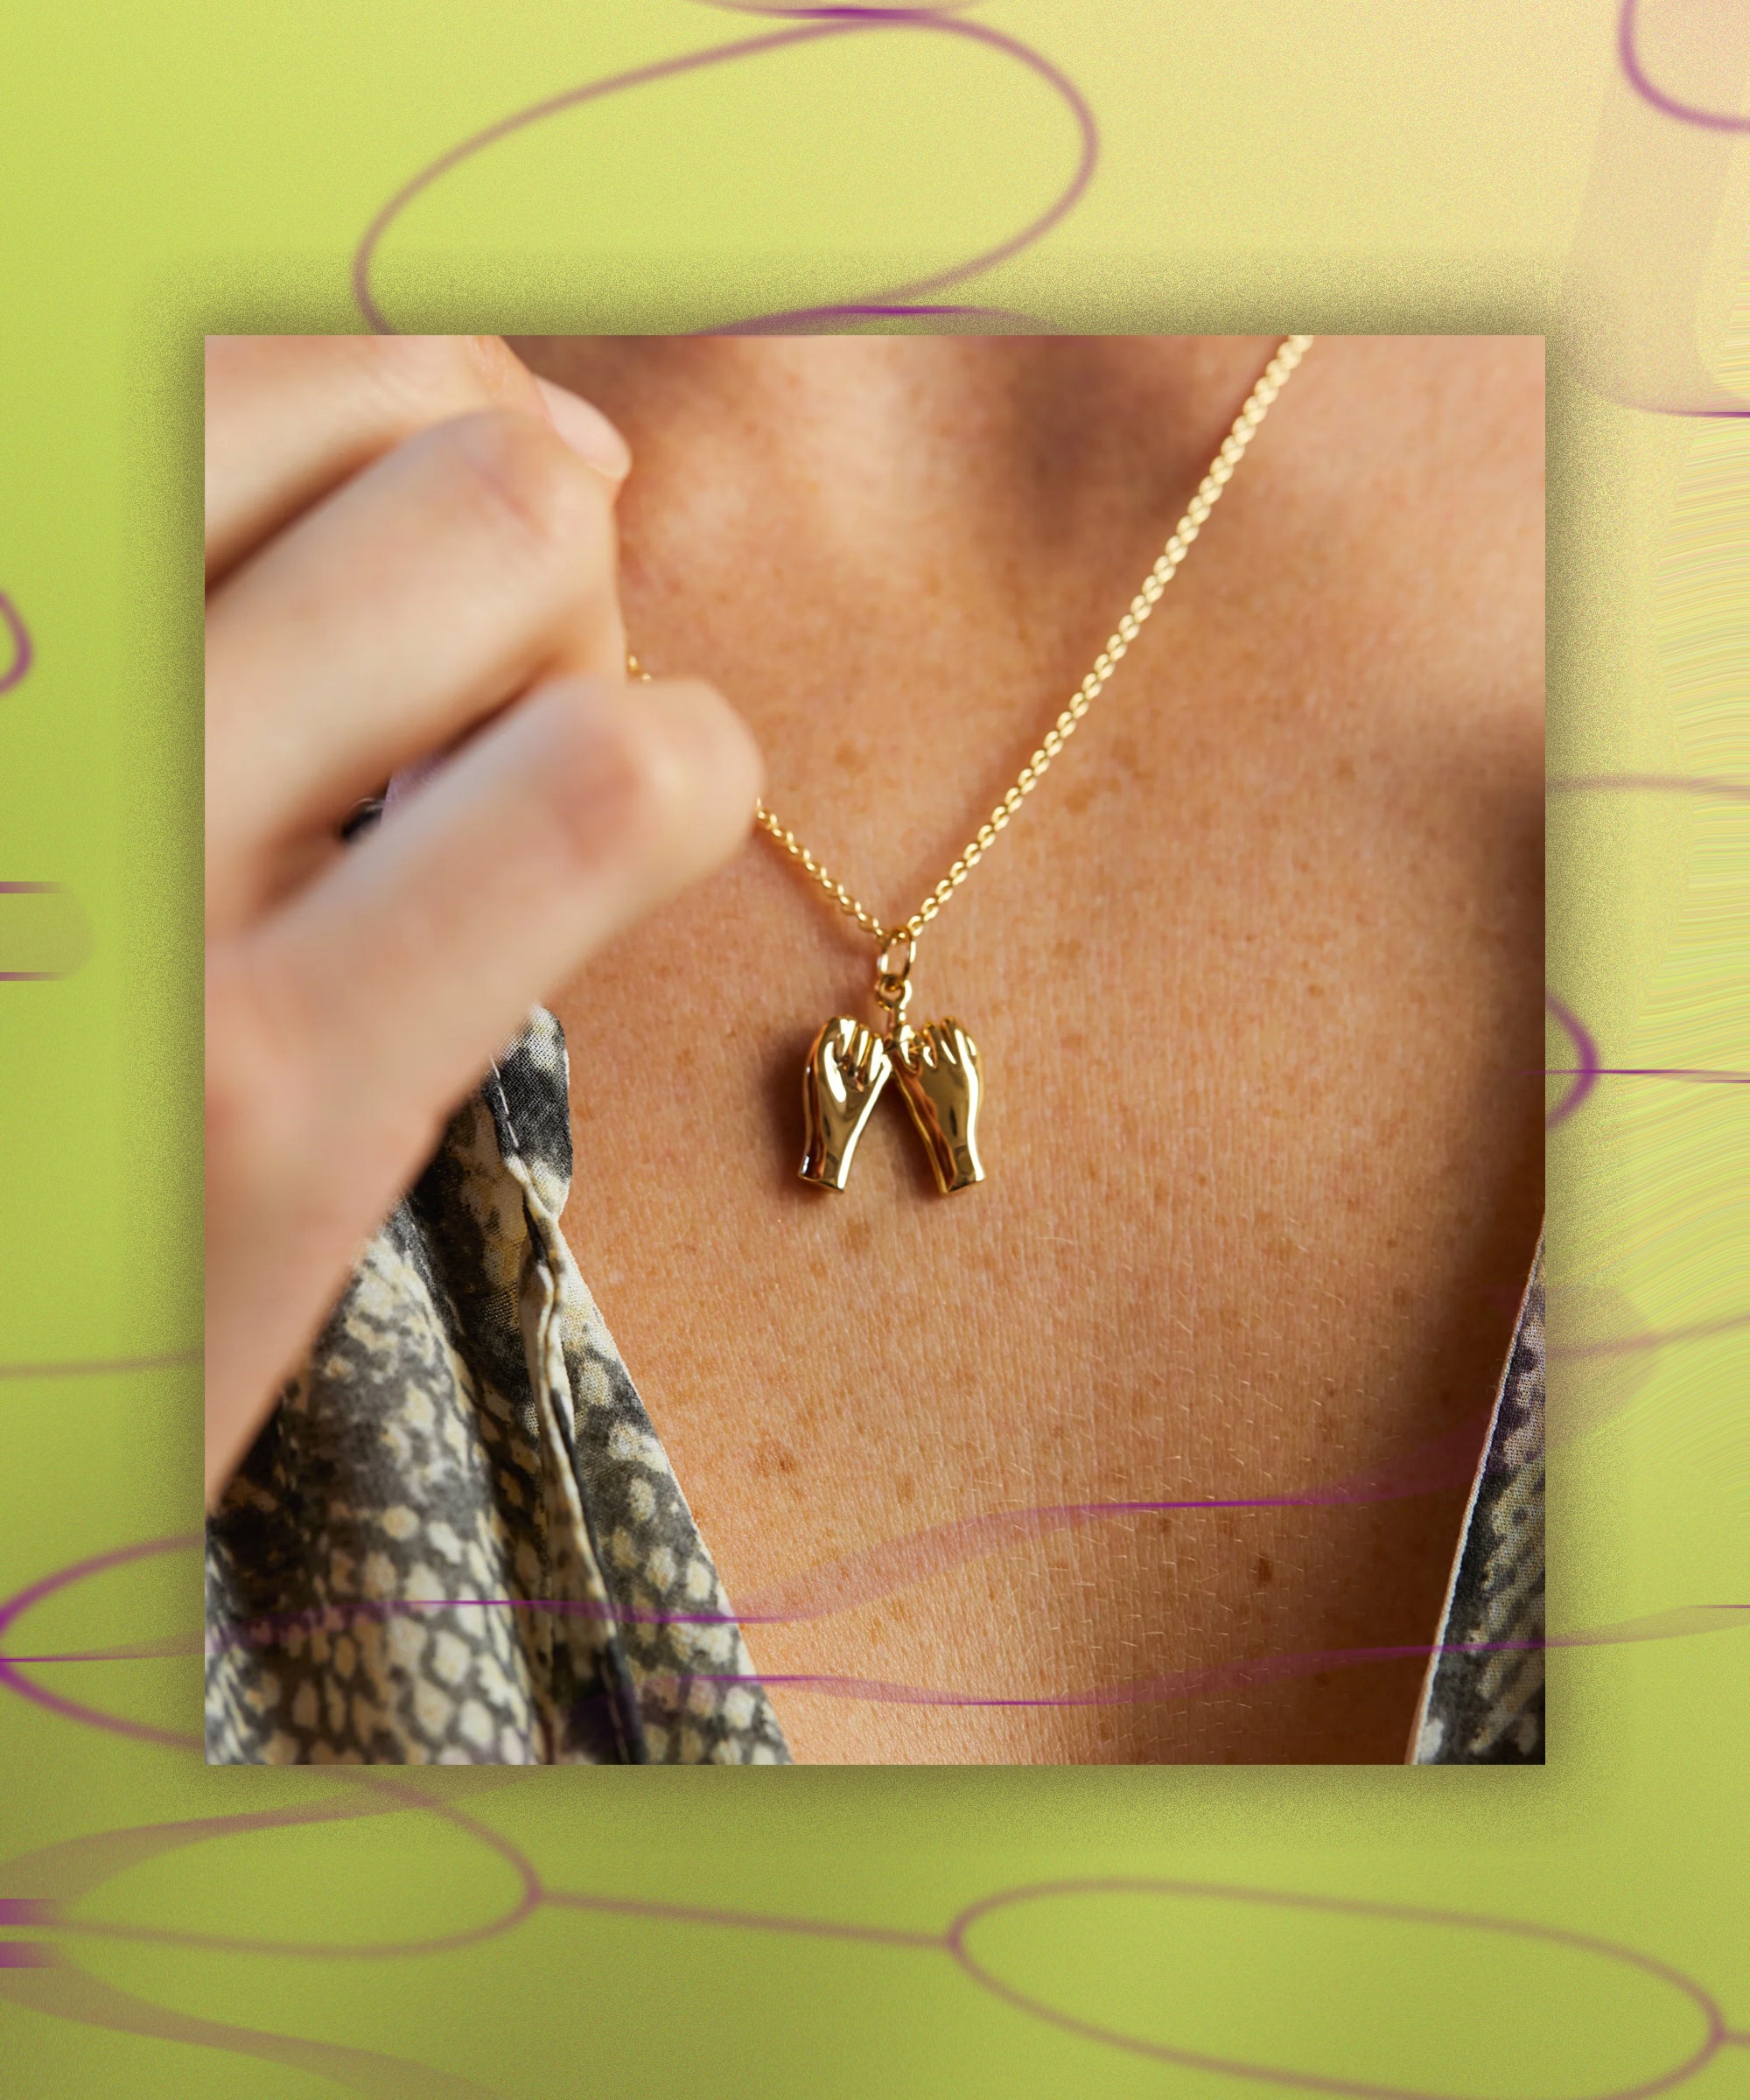 Baublebar Heart 18K Gold Custom Best Friend Necklaces - Heart Best Friend Pendants